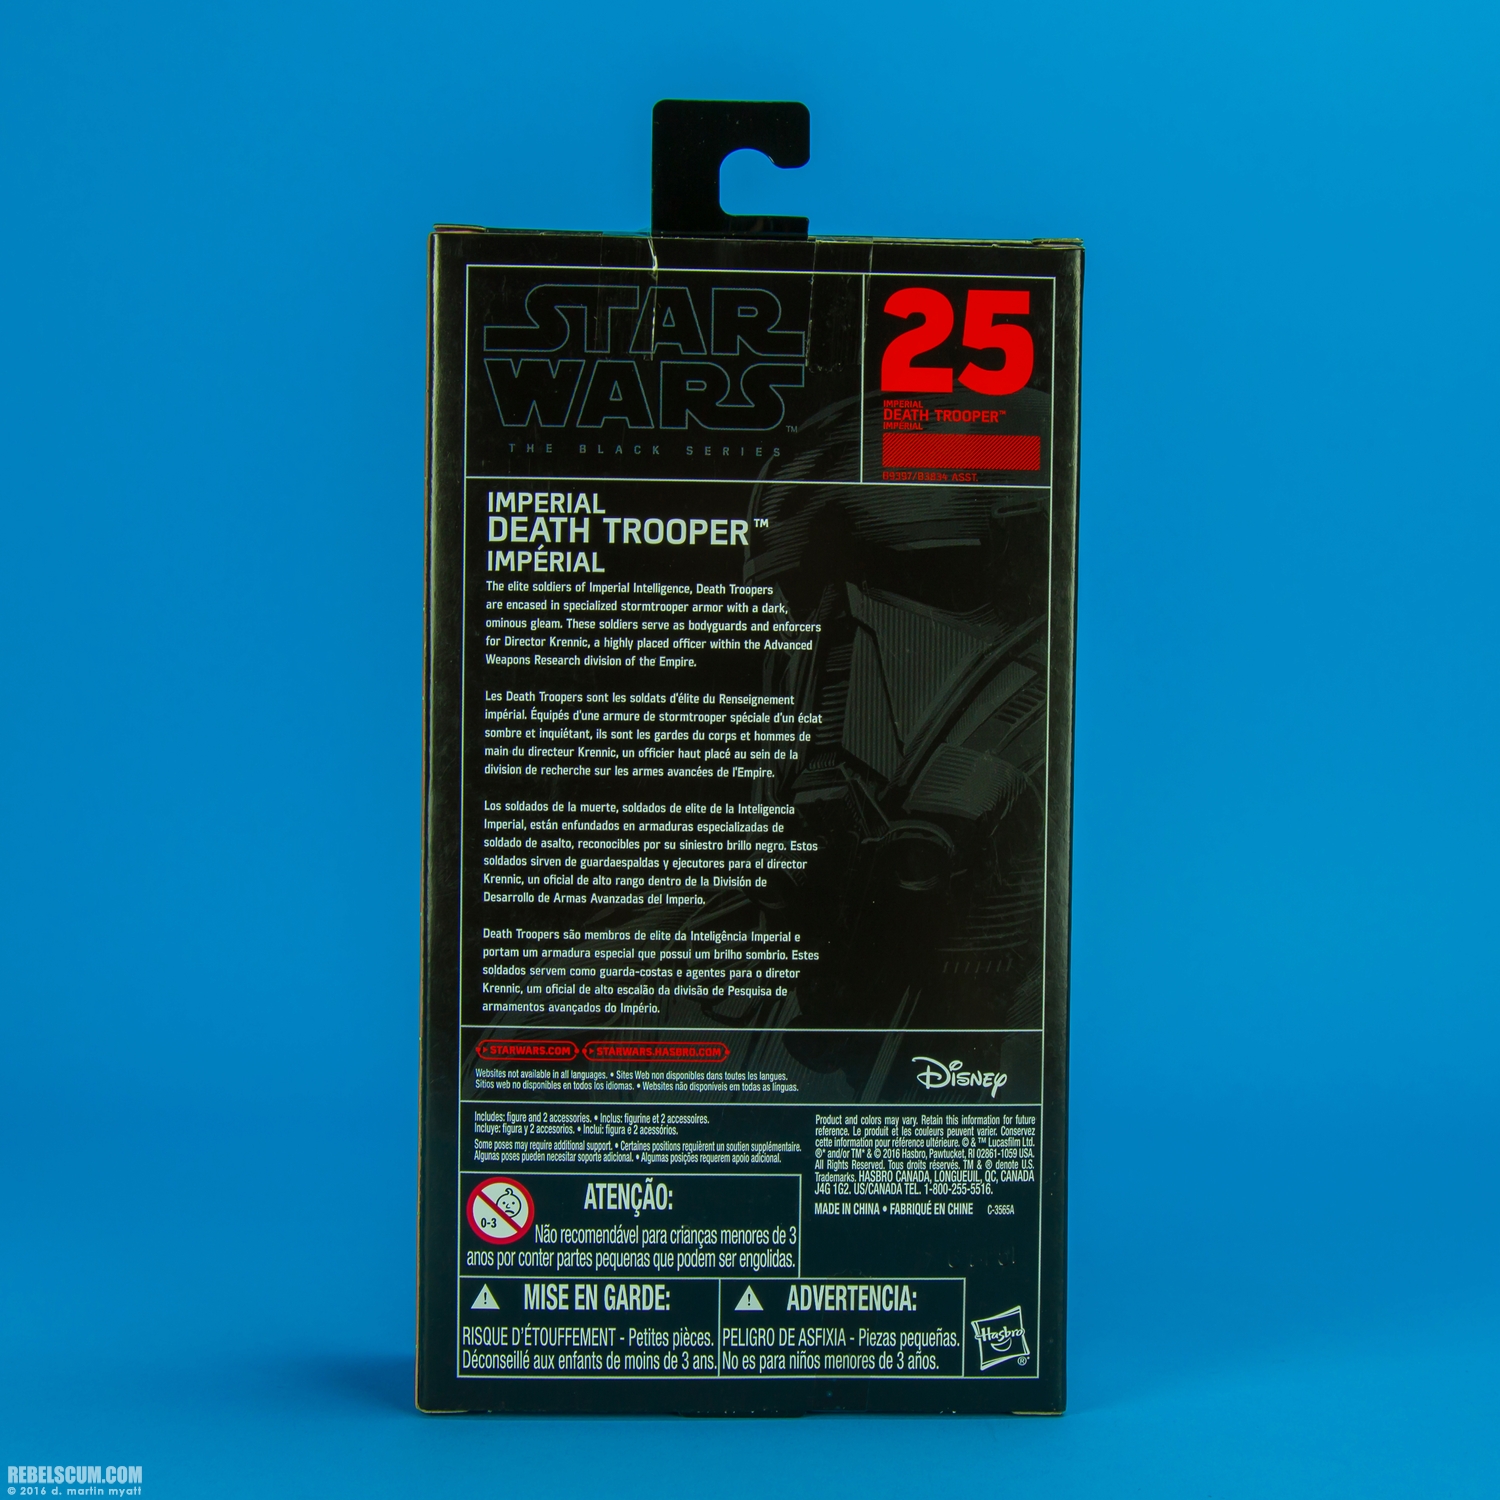 Imperial-Death-Trooper-25-The-Black-Series-6-inch-017.jpg